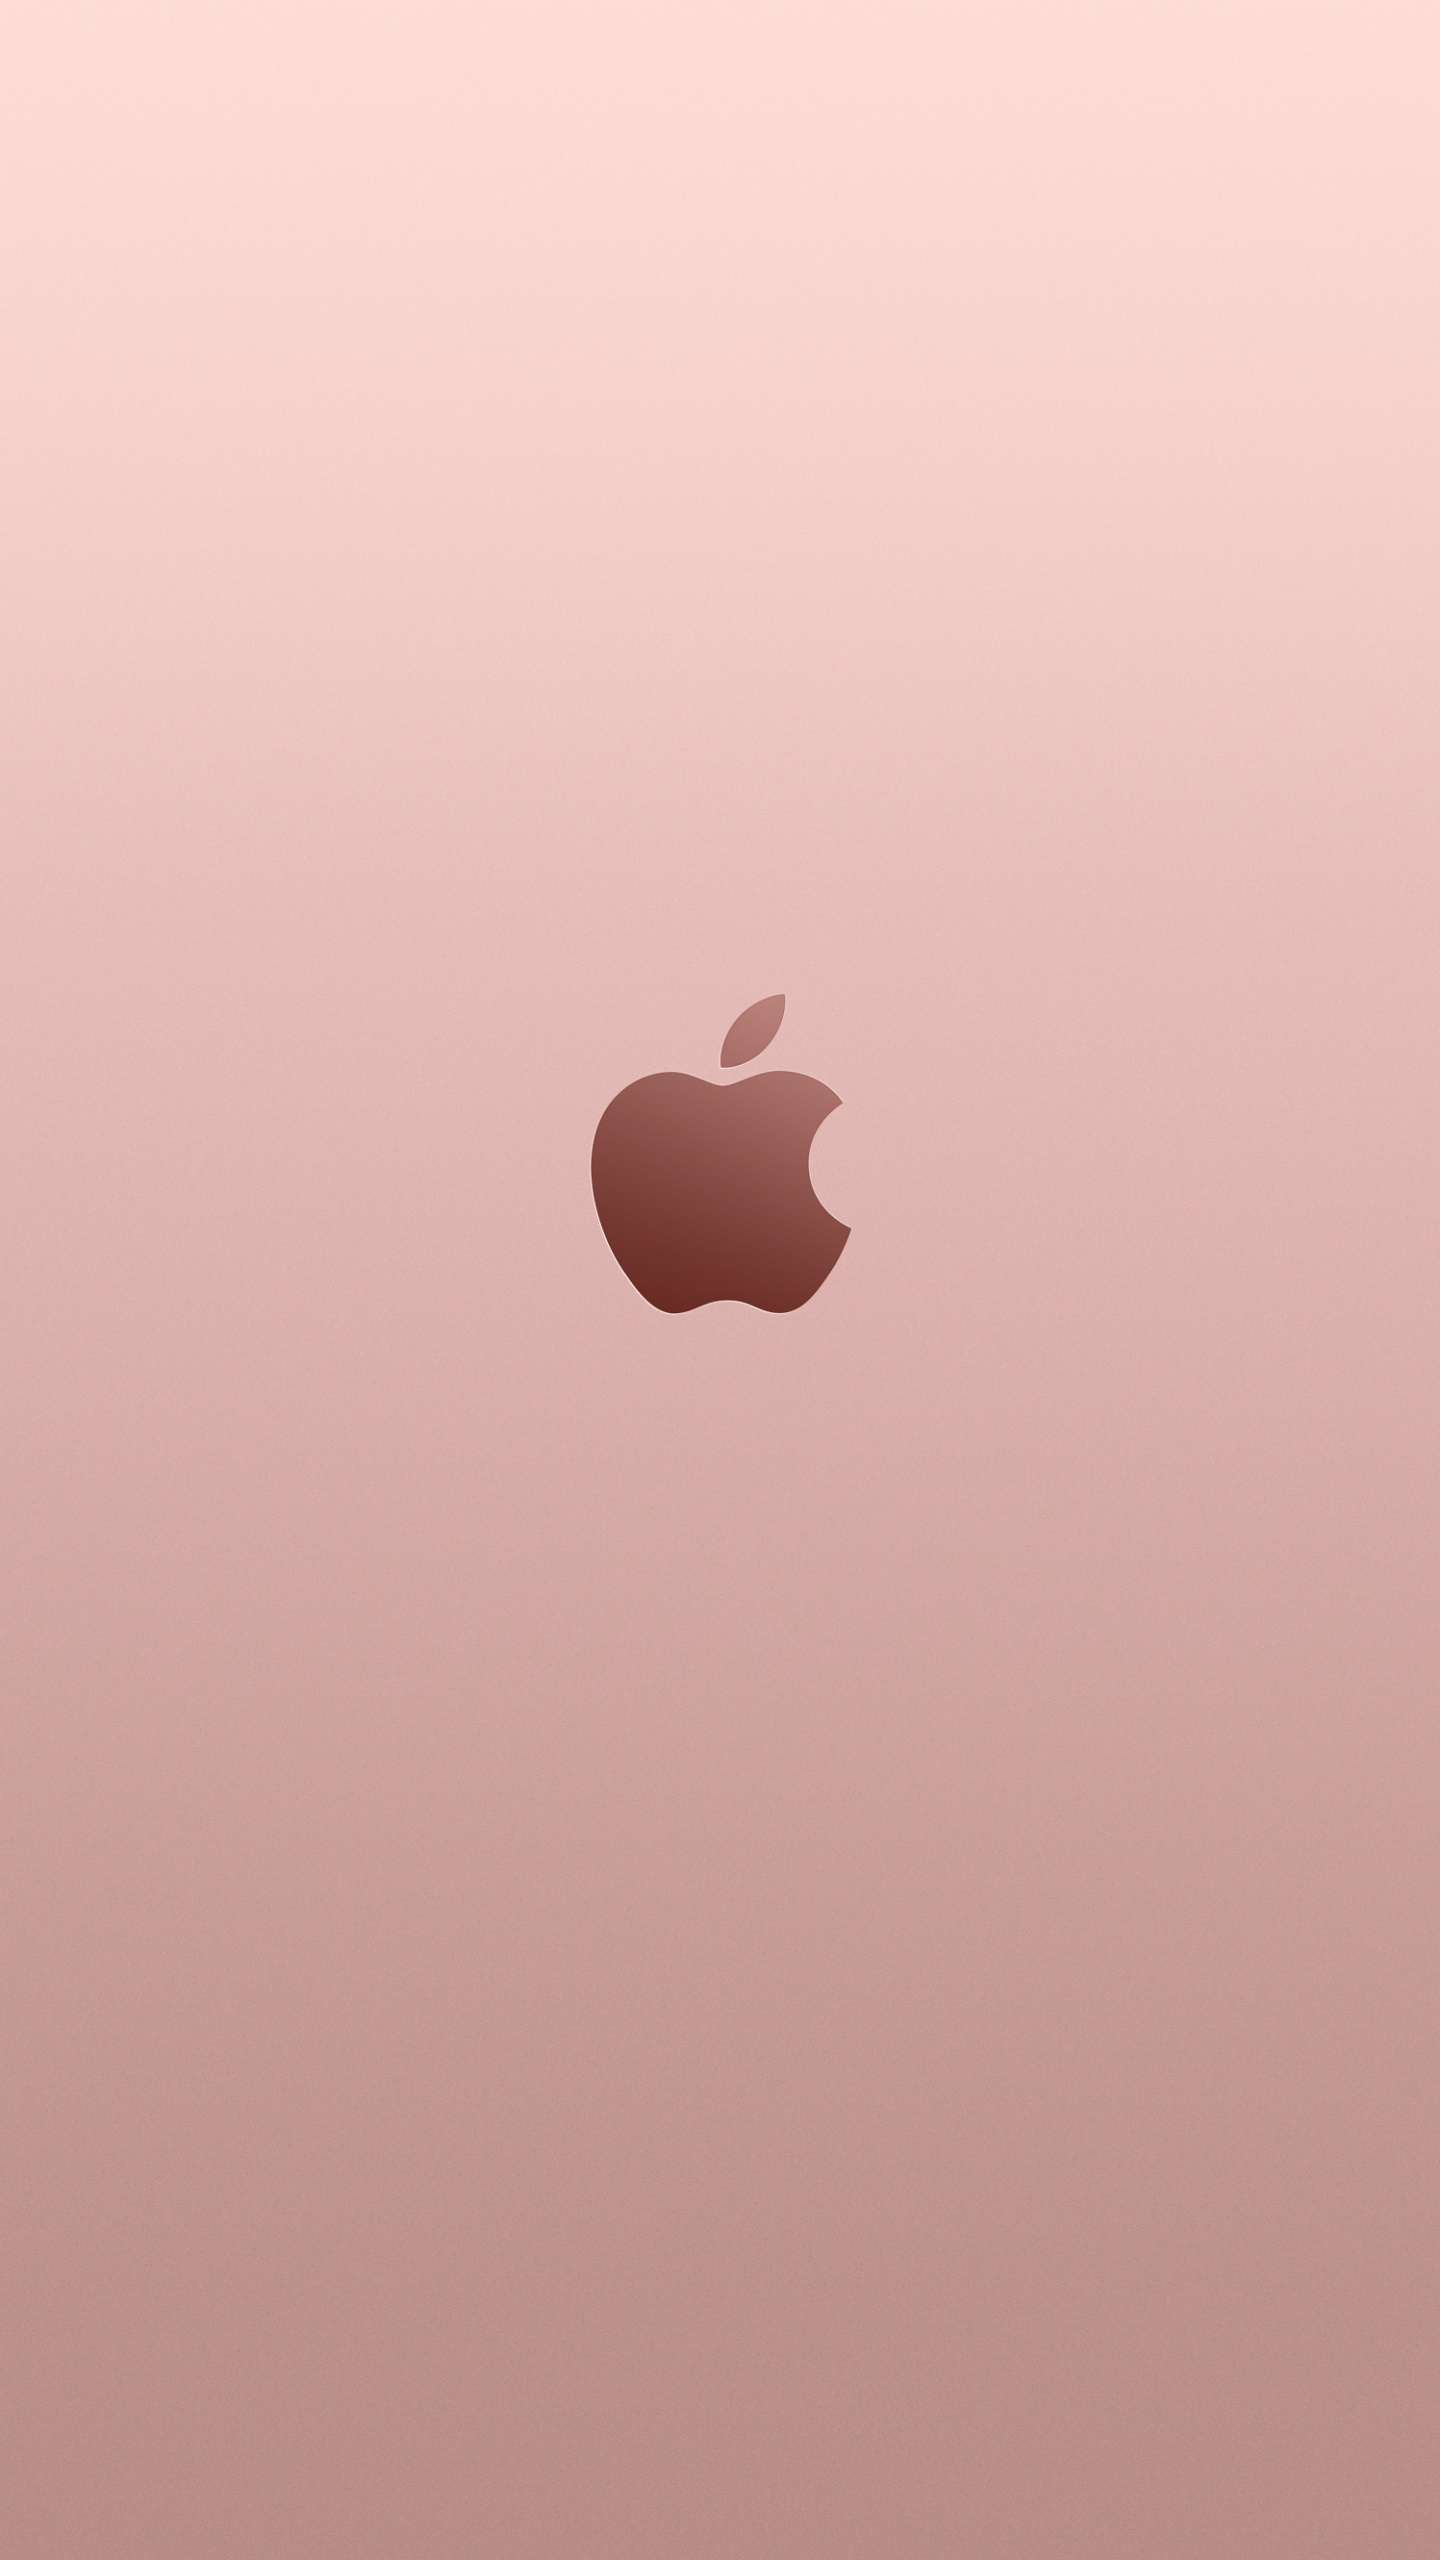 Apple, 黄金, 粉红色, 心脏, 天空 壁纸 1440x2560 允许